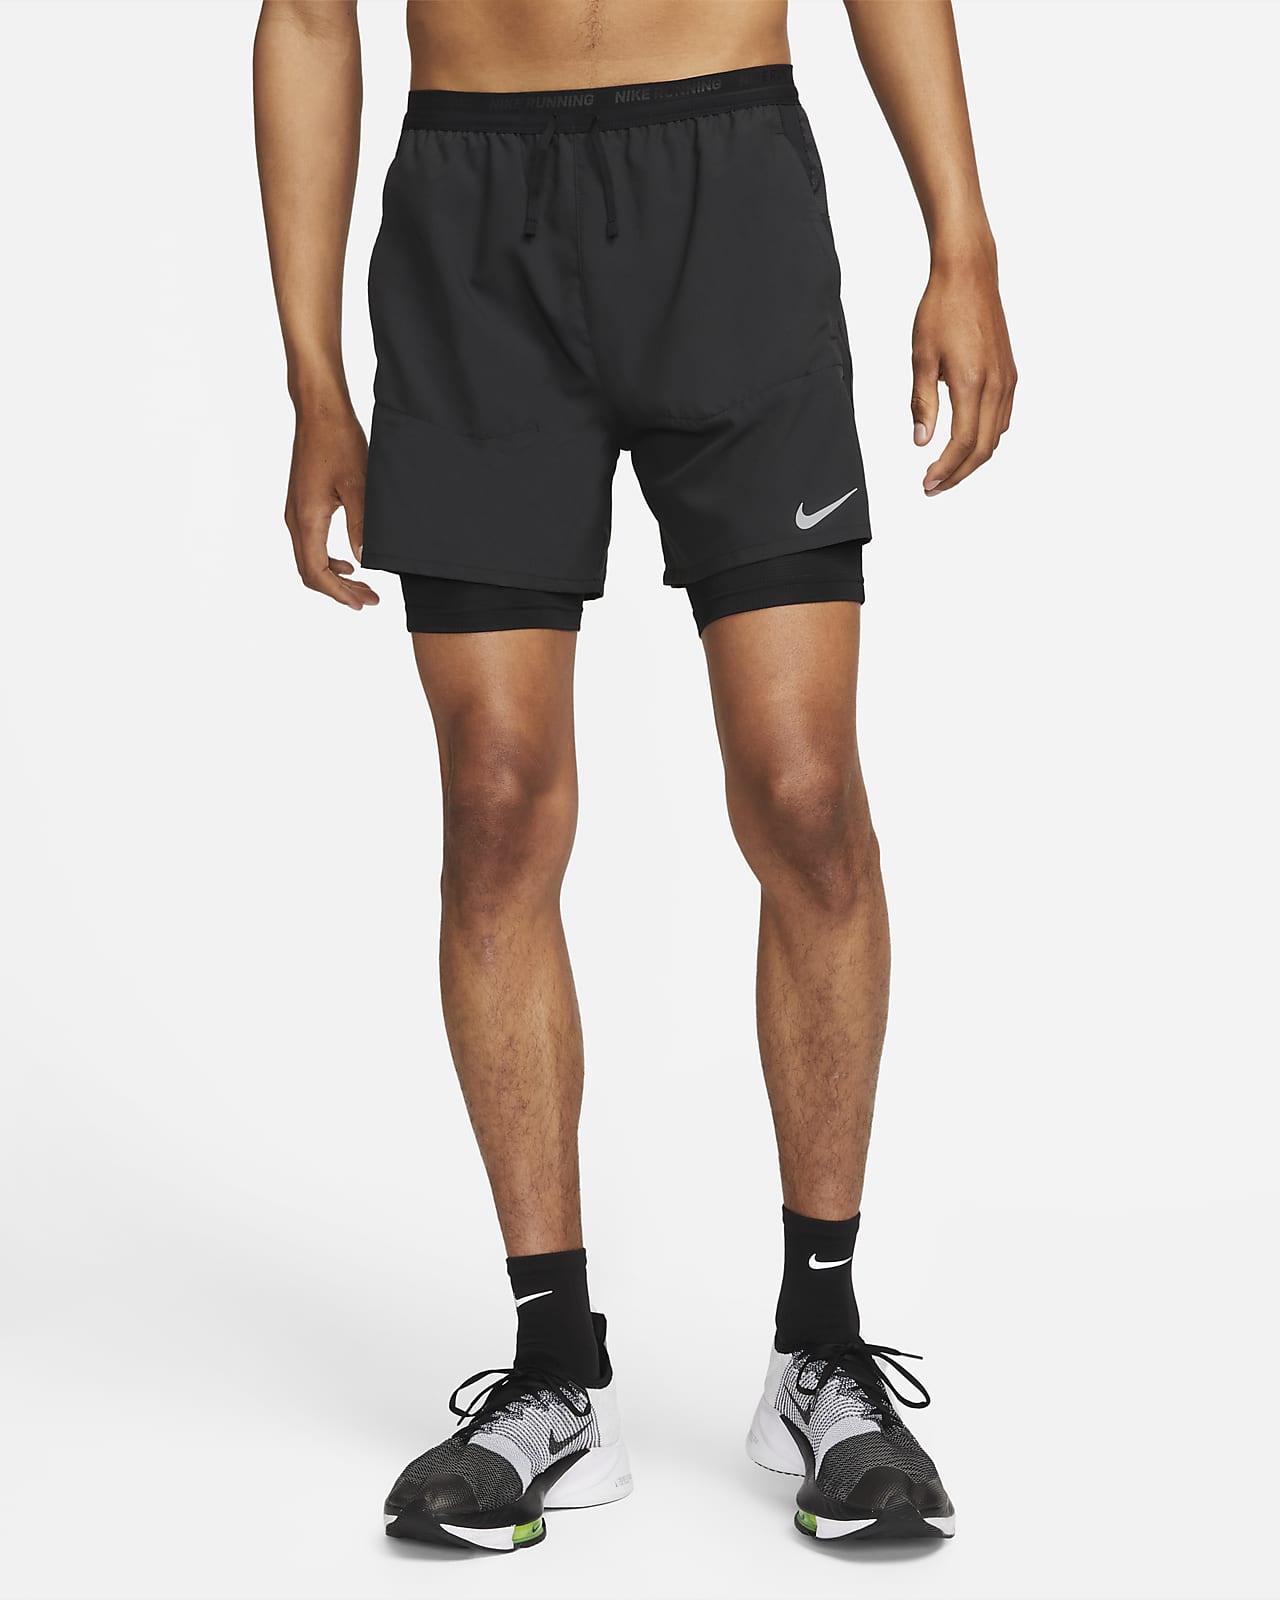 Stride Dri-Fit-hybridløbeshorts til mænd (13 cm). Nike